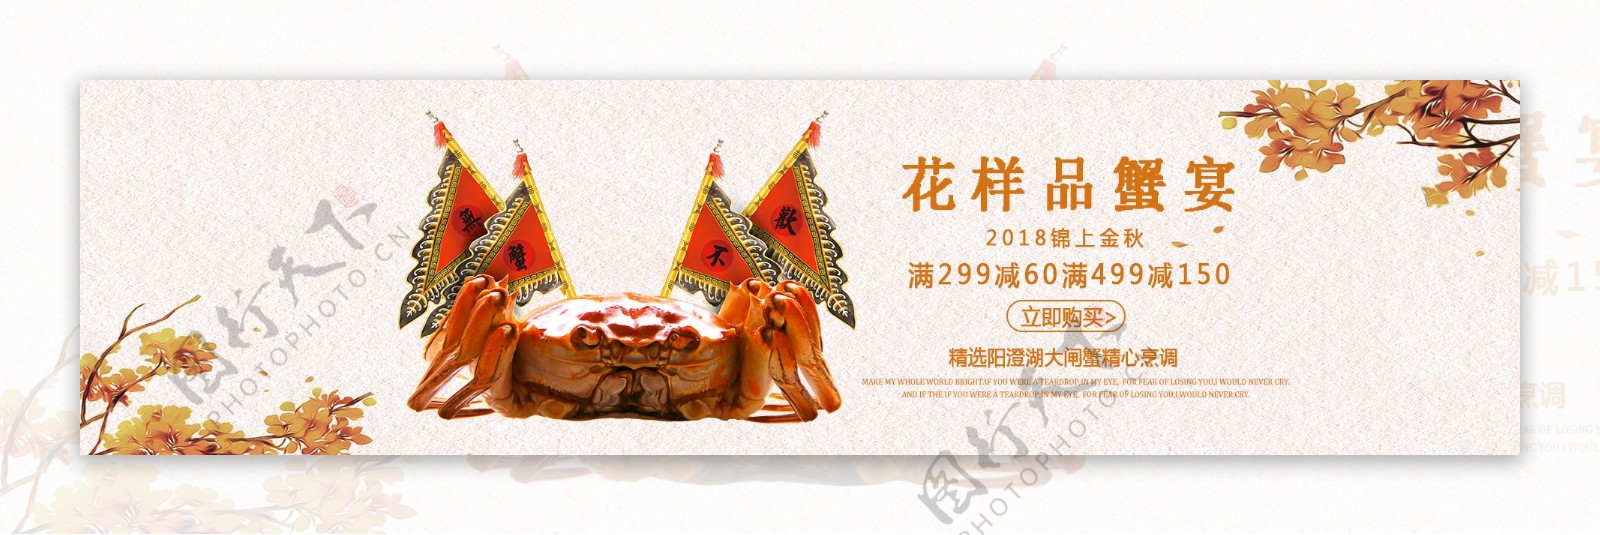 螃蟹促销banner